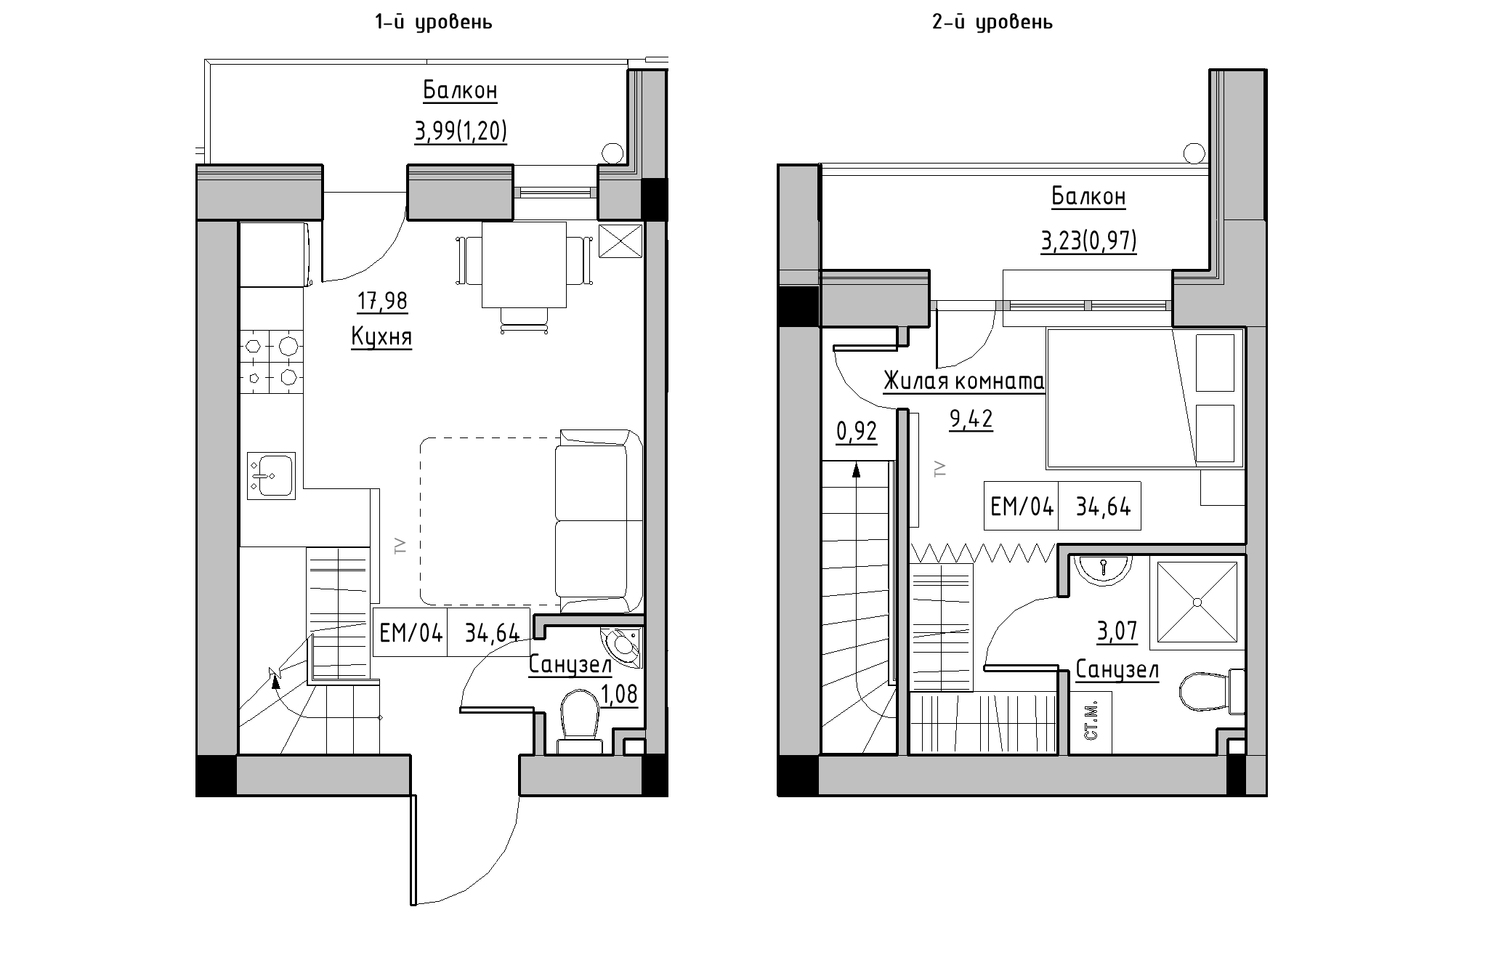 Planning 2-lvl flats area 34.64m2, KS-010-05/0005.